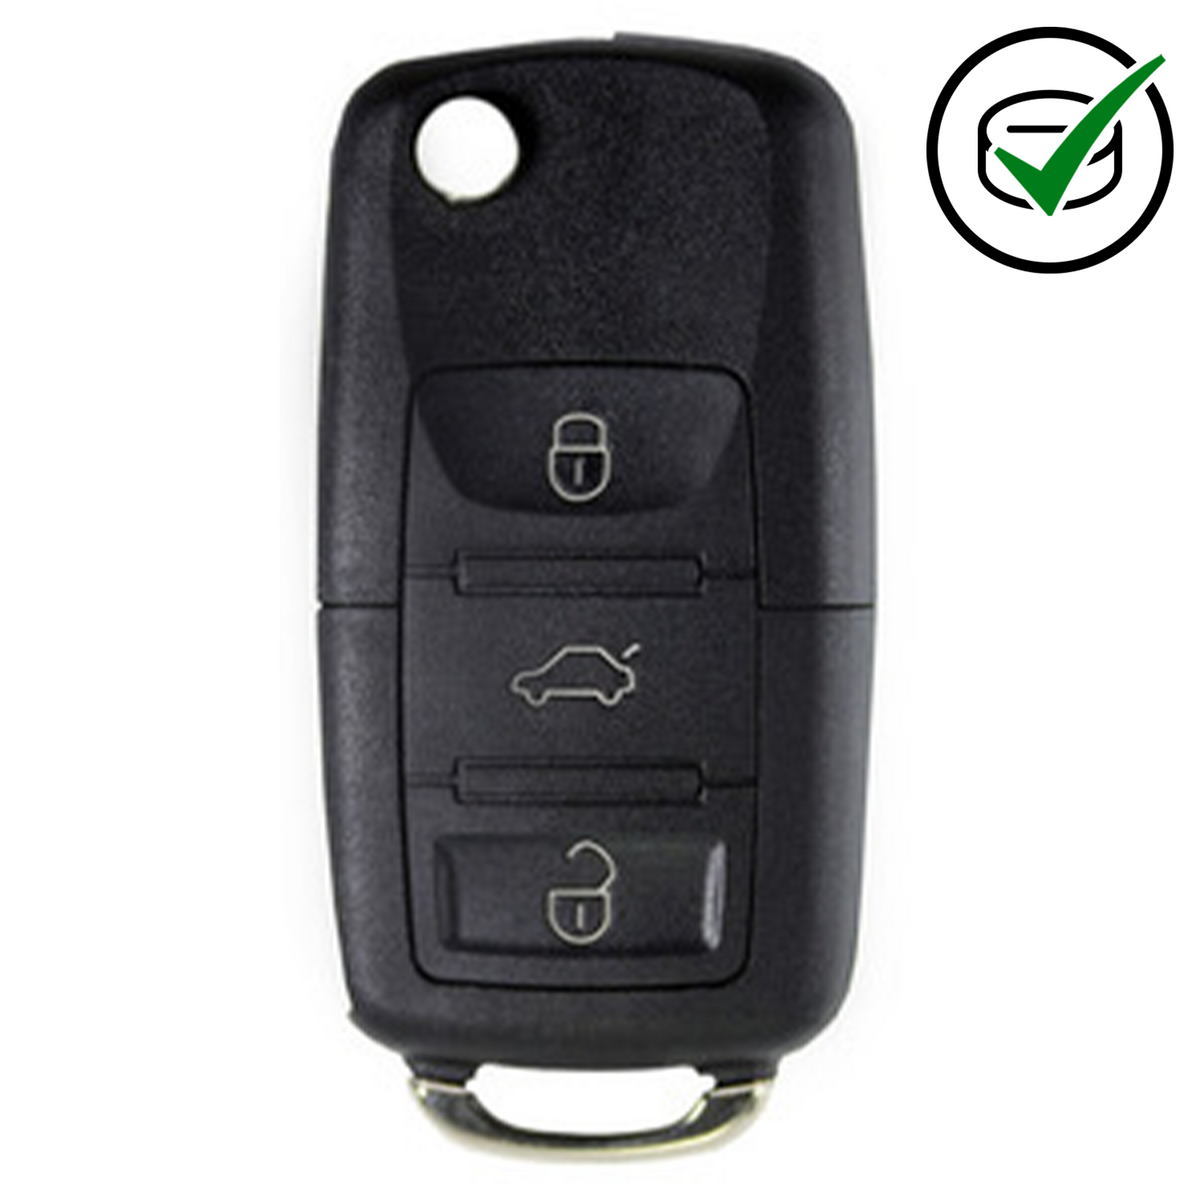 KD 900 key remote 3 button VW Style x 50